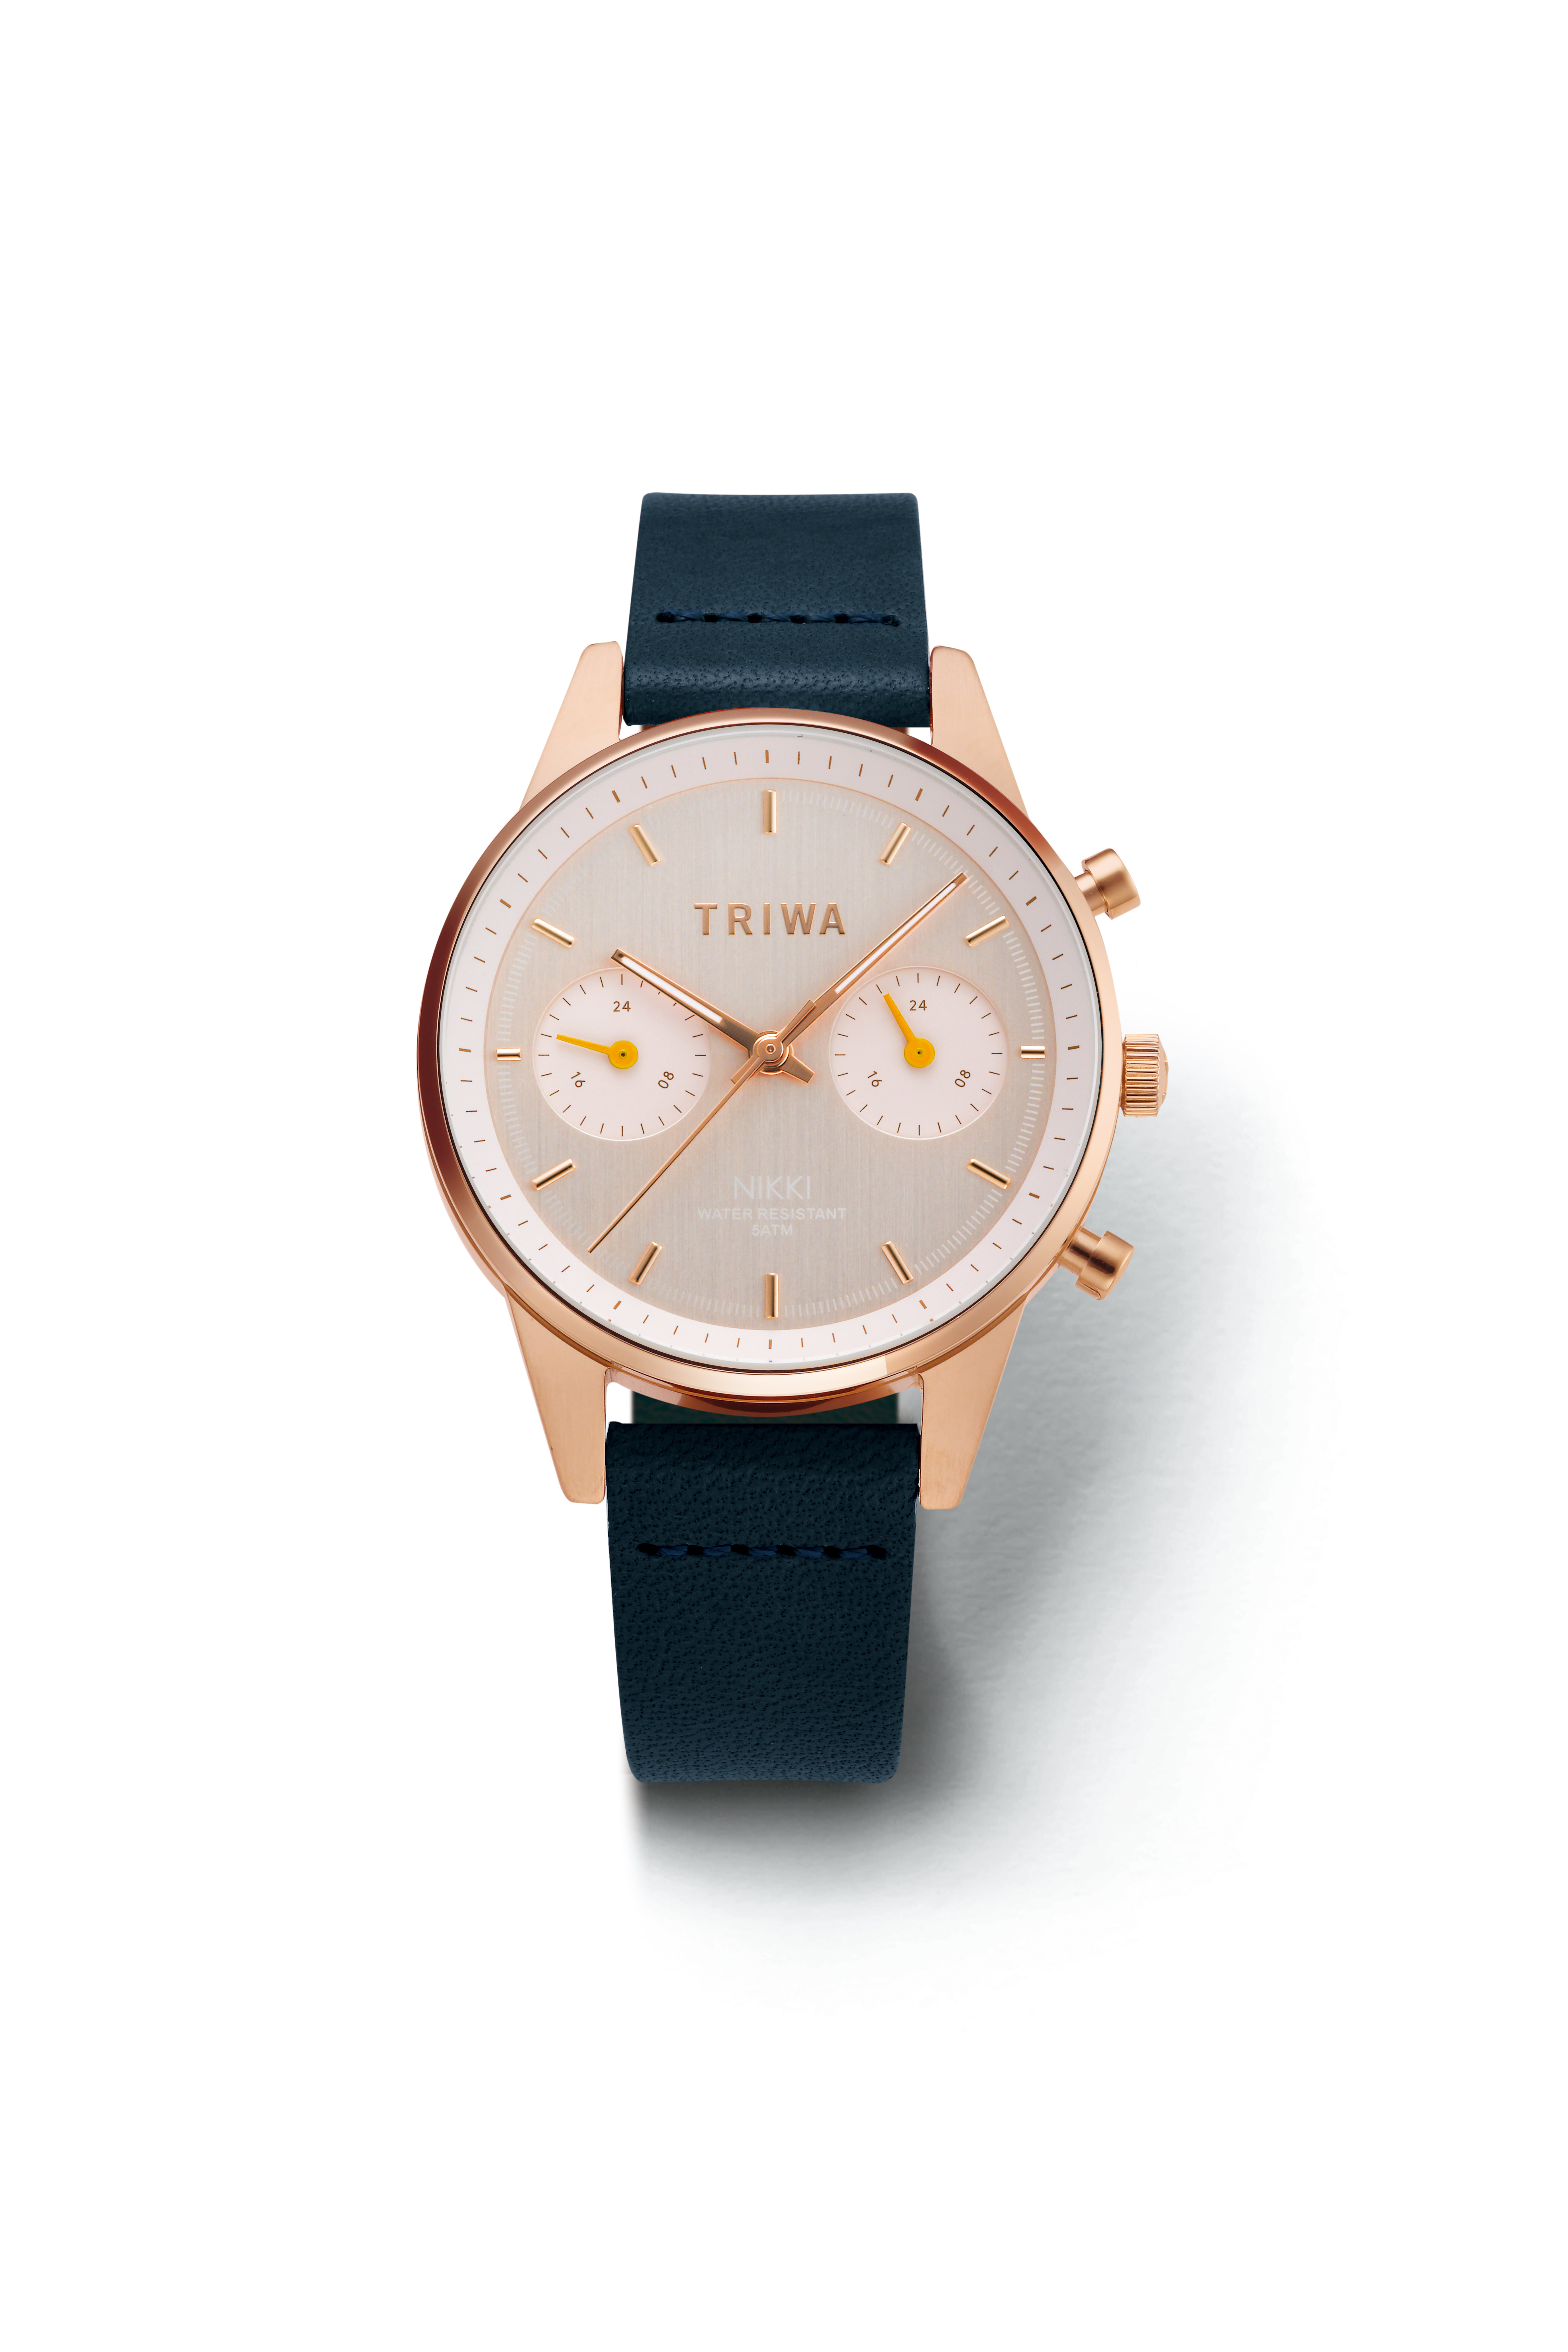 「端正な品」を備えたレザー時計『TRIWA』がキャンペーンを実施